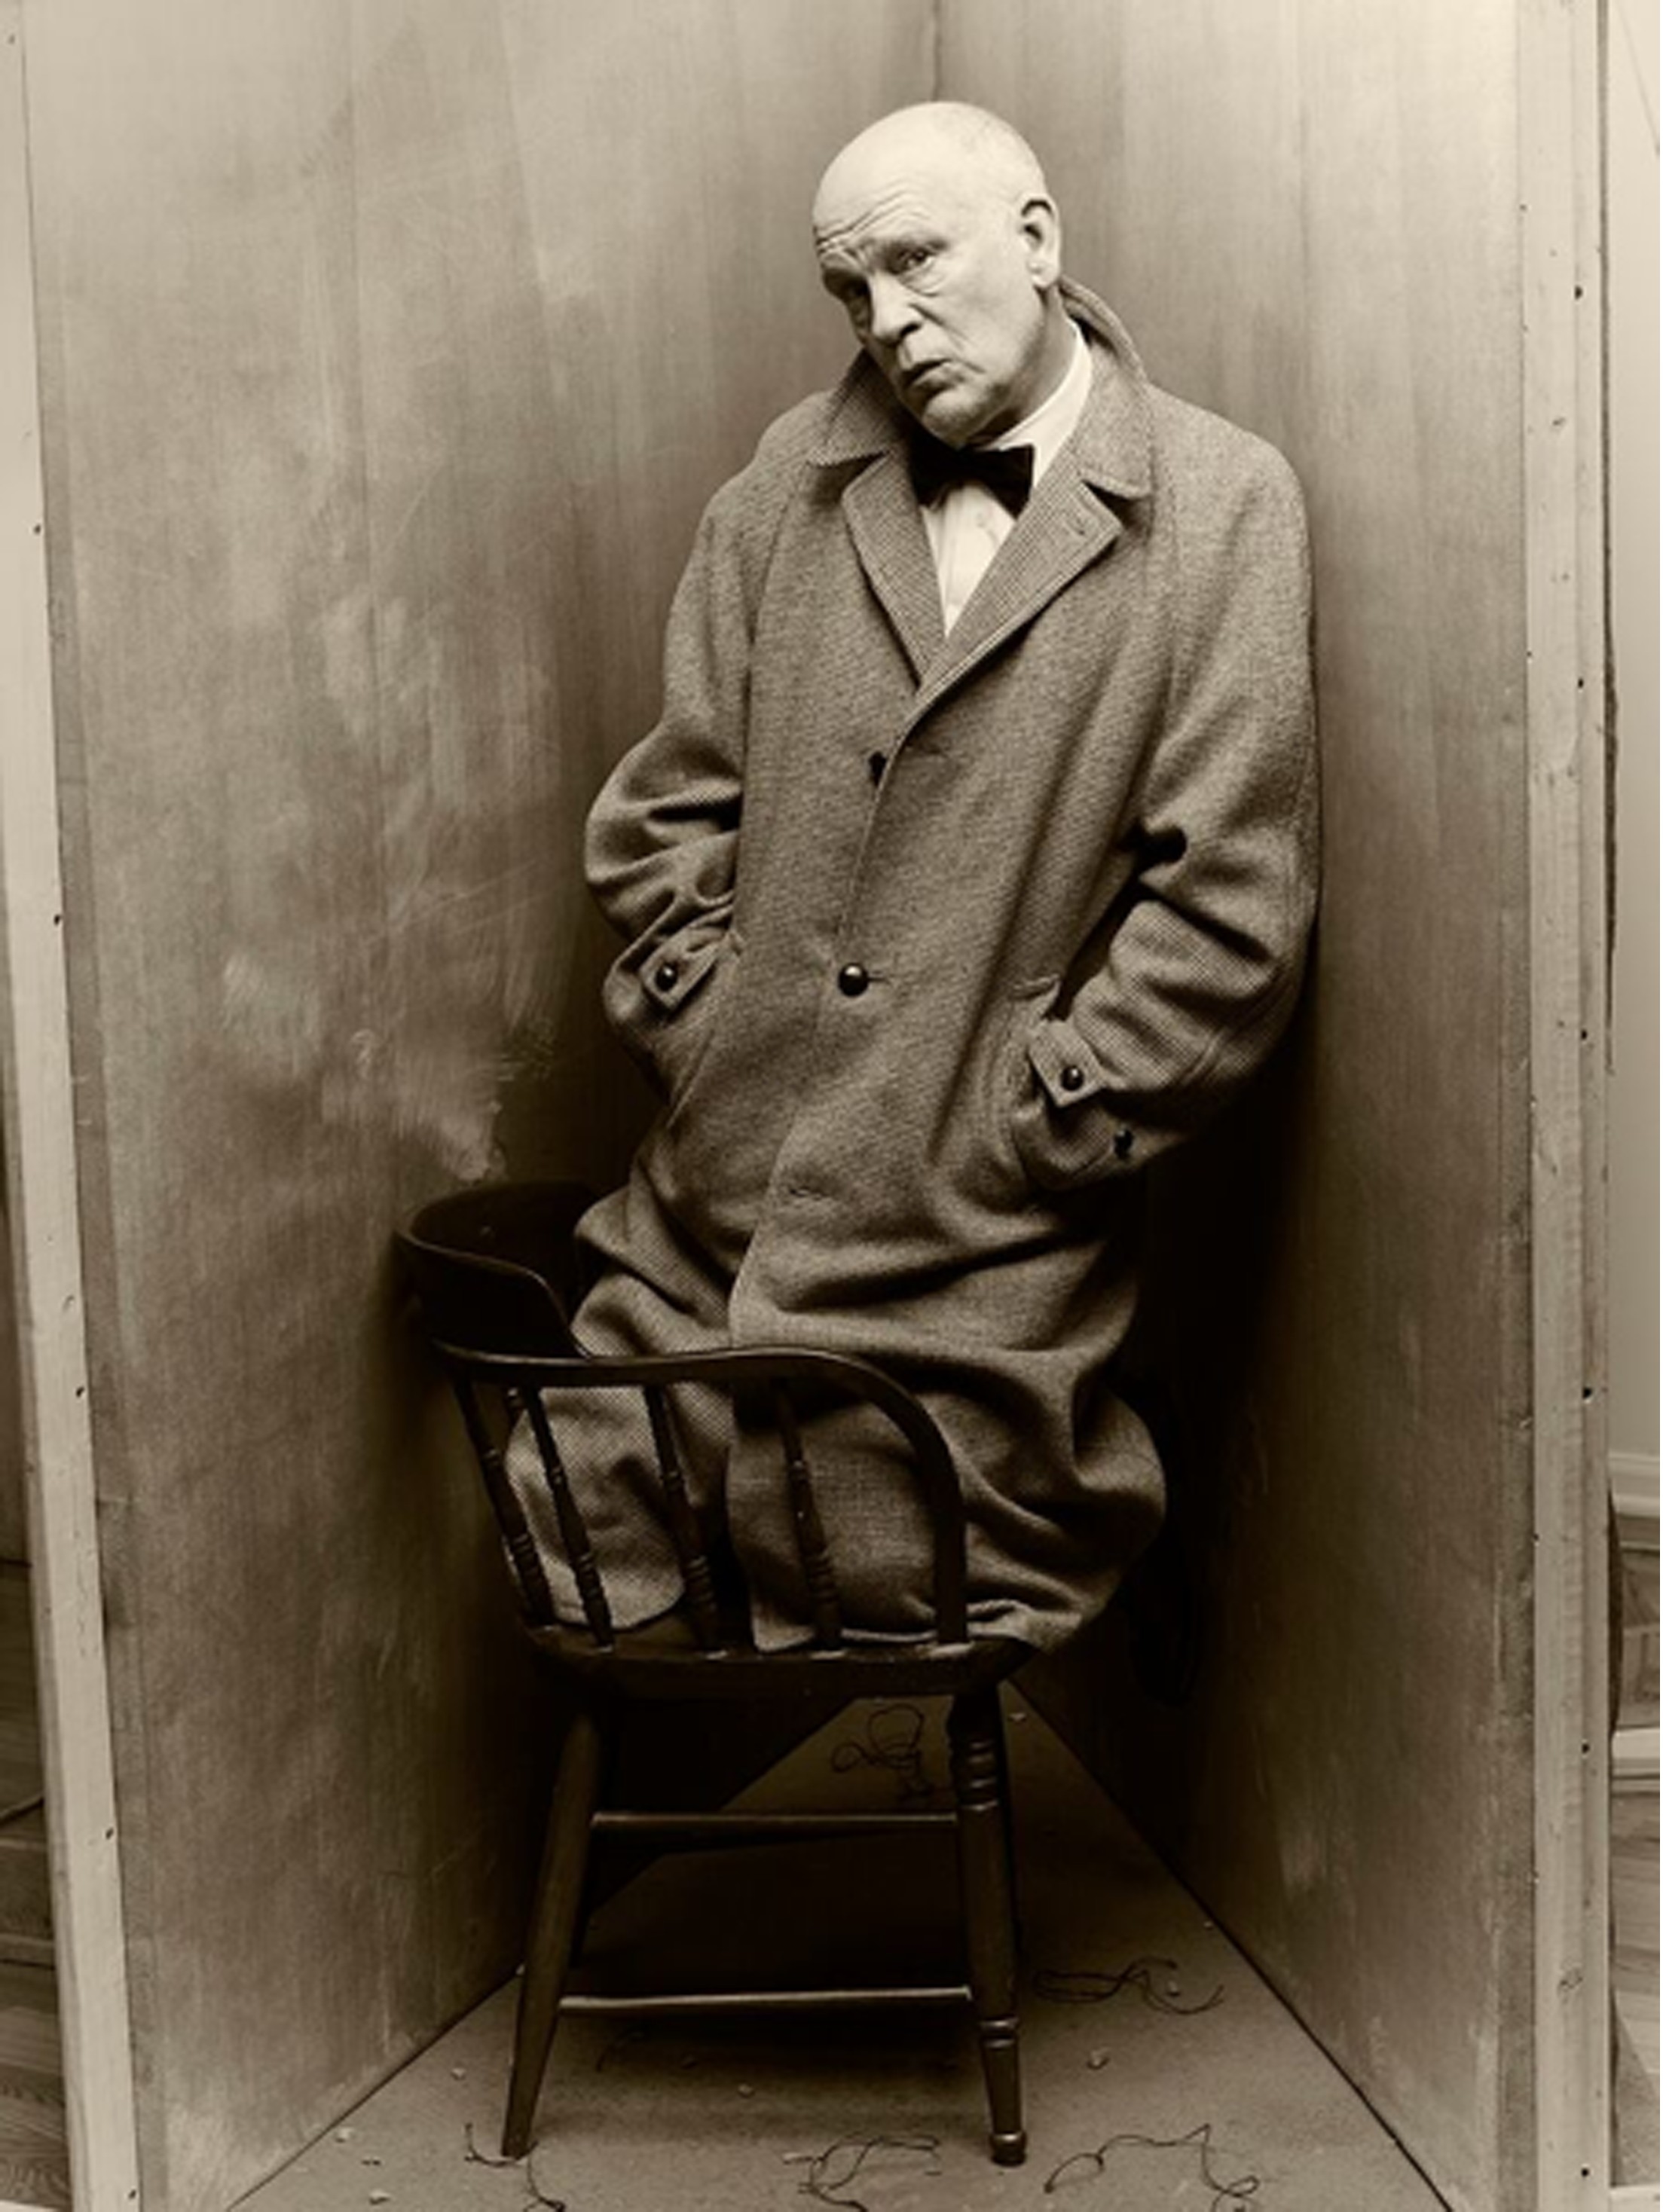 Irving Penn - Capote New York (1948) 2014.